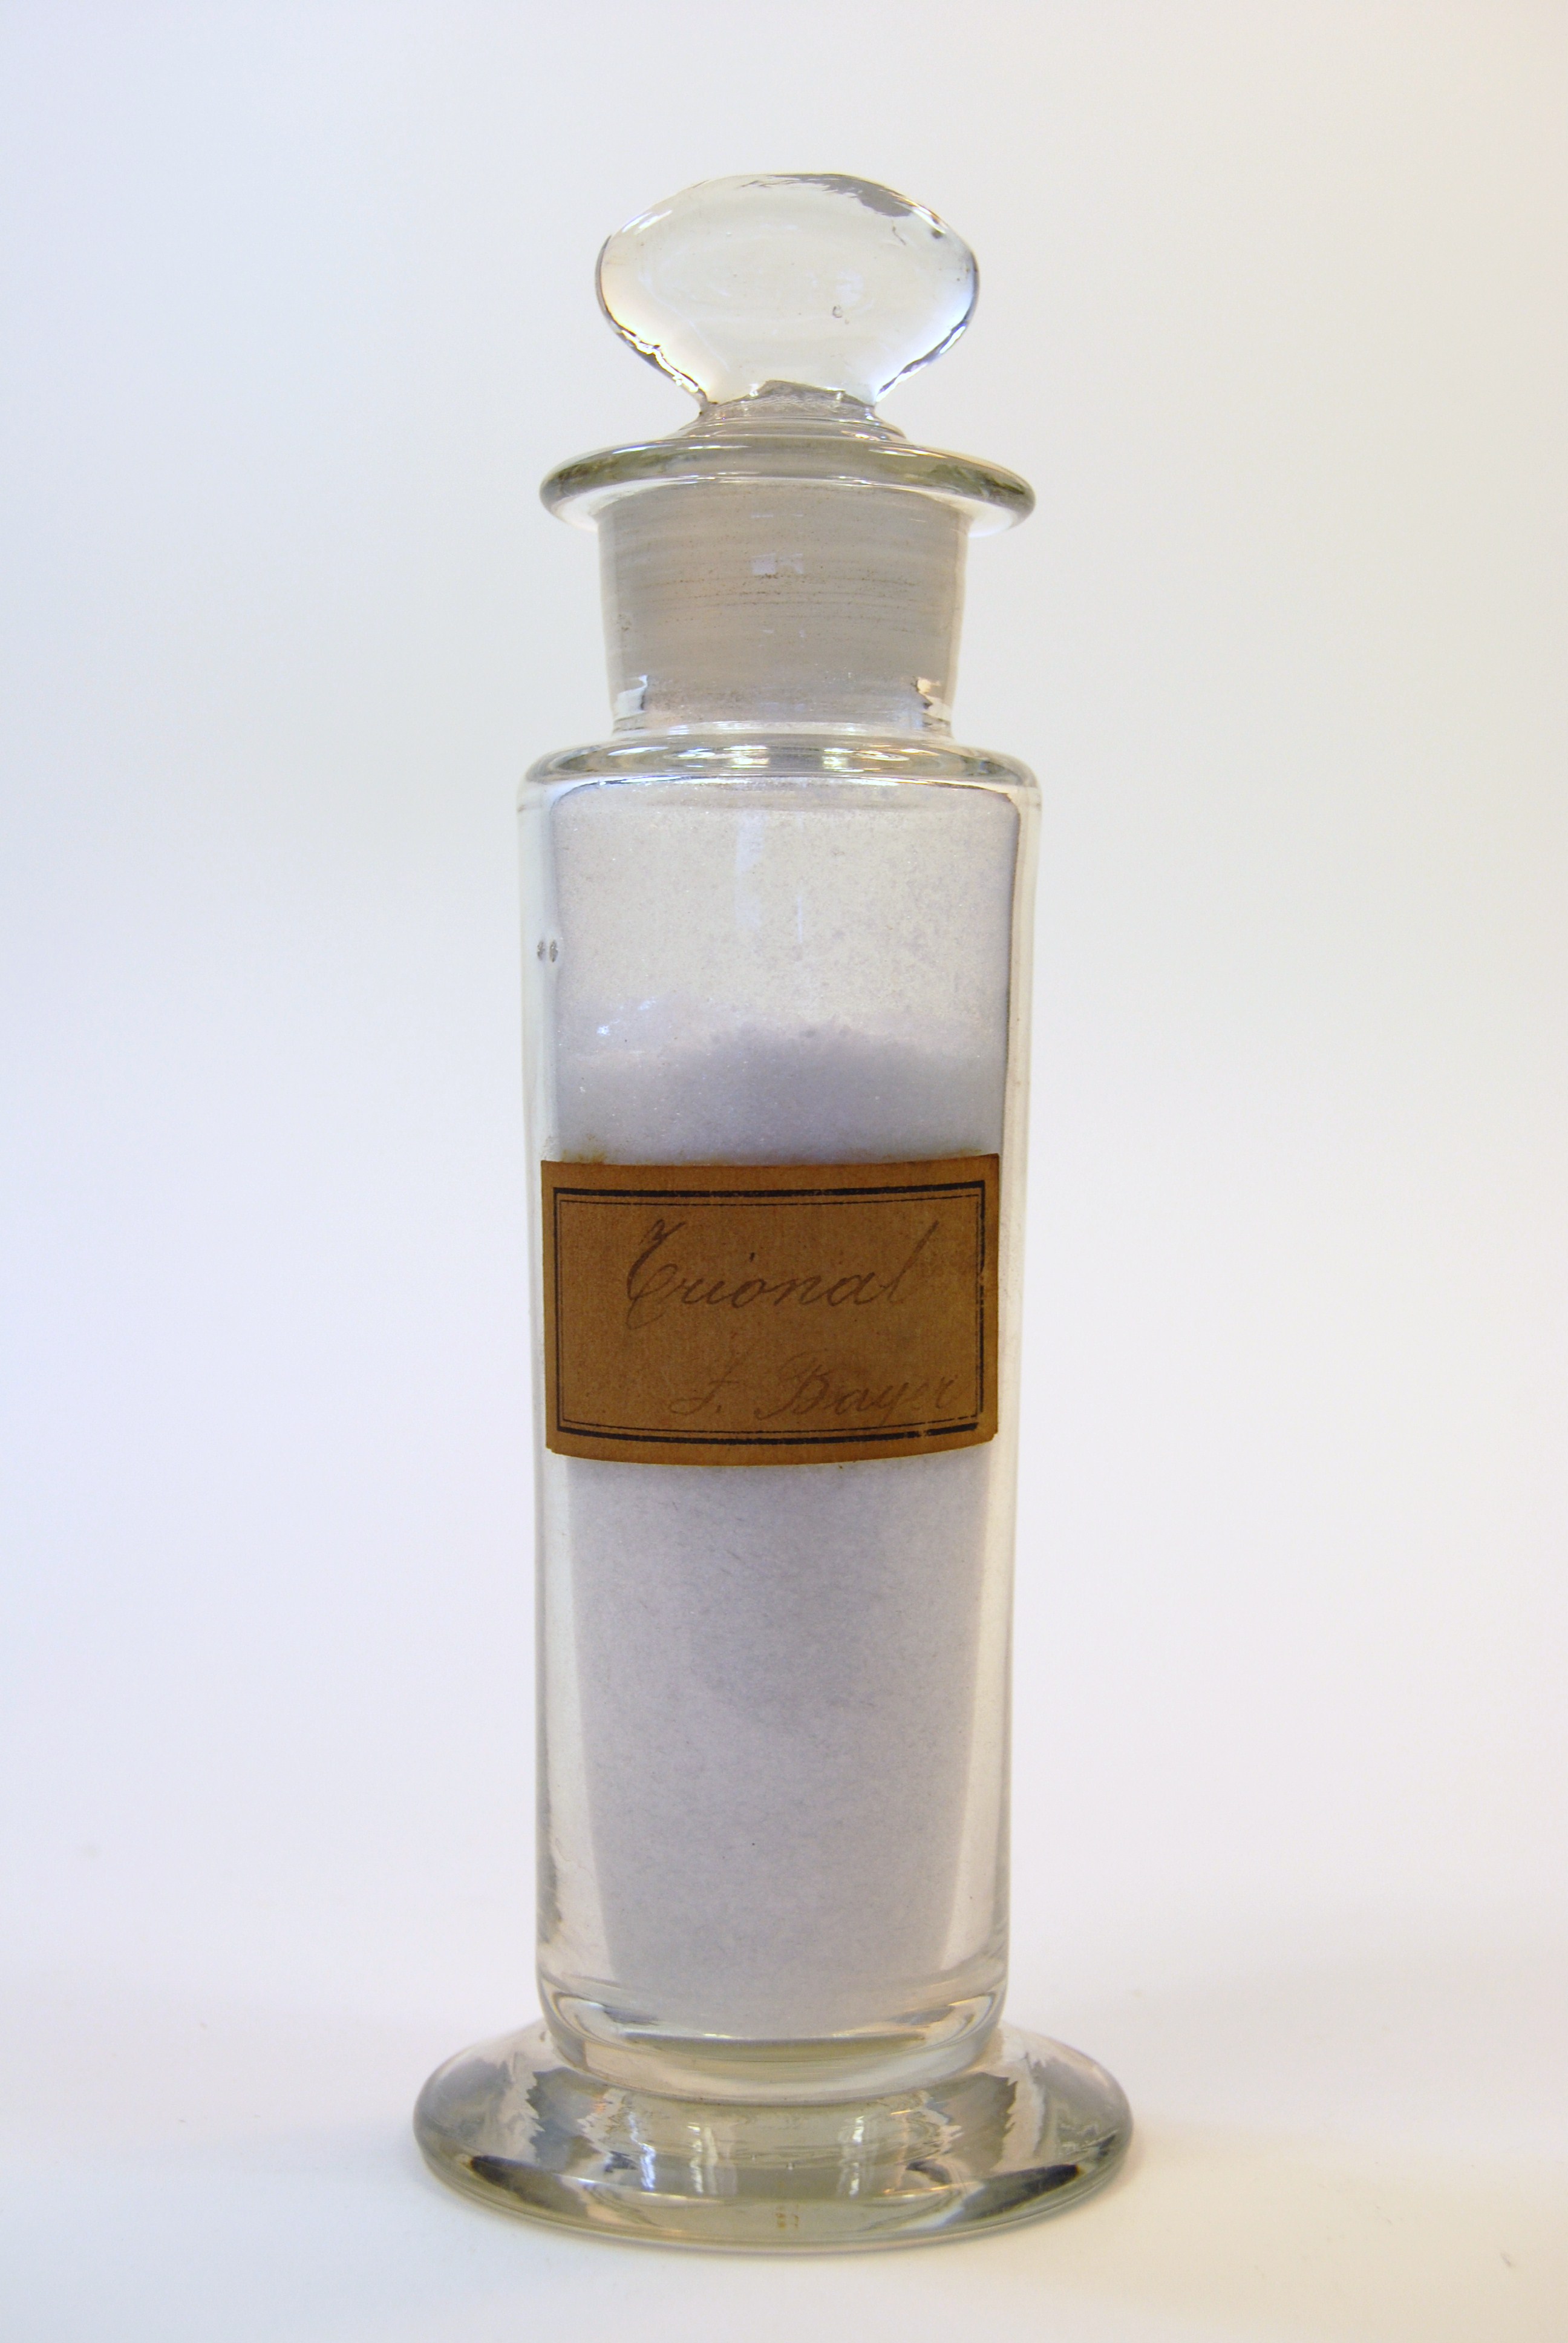 trional (prodotto chimico, di sintesi) di Ugo Schiff (laboratorio) - scuola chimica fiorentina (metà/ inizio XIX/ XX)